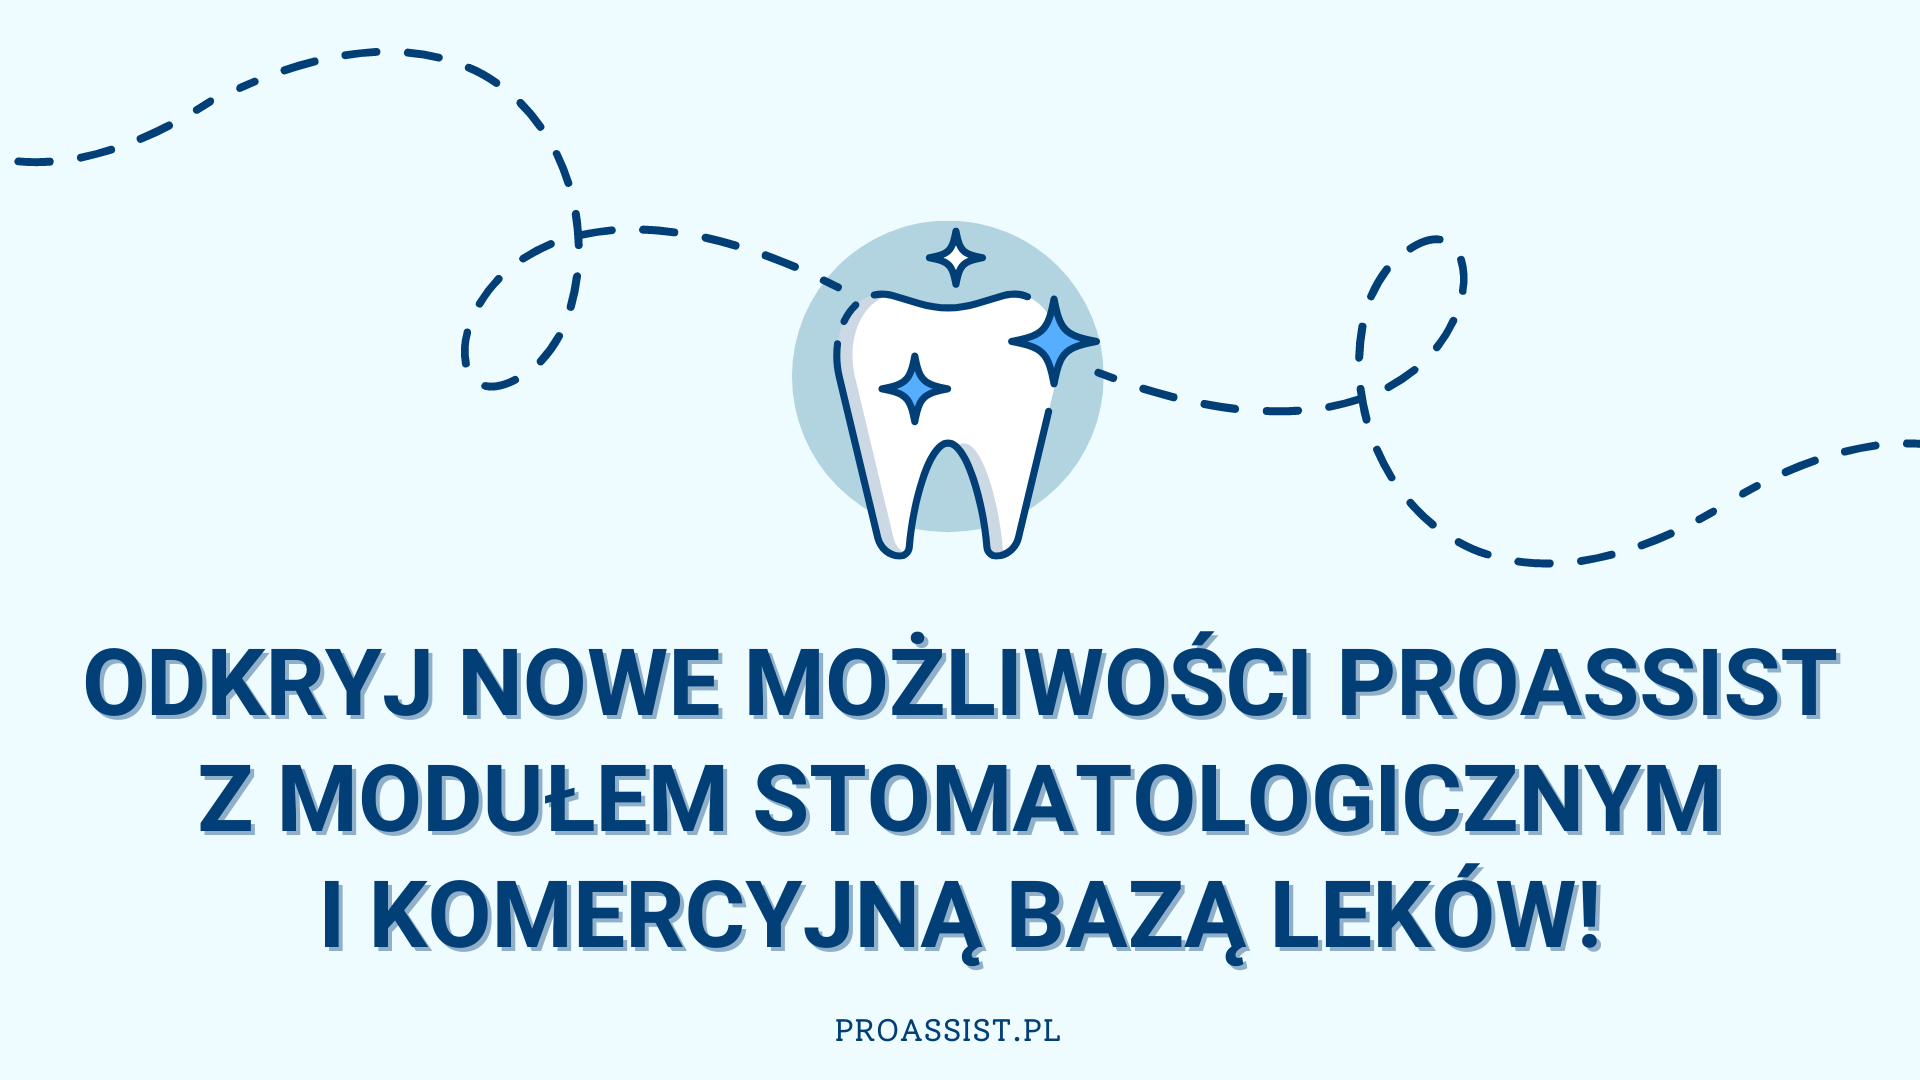 Grafika w niebieskich kolorach dla stomatologów. odkryj nowe możliwości proassist z modułem stomatologicznym i bazą leków